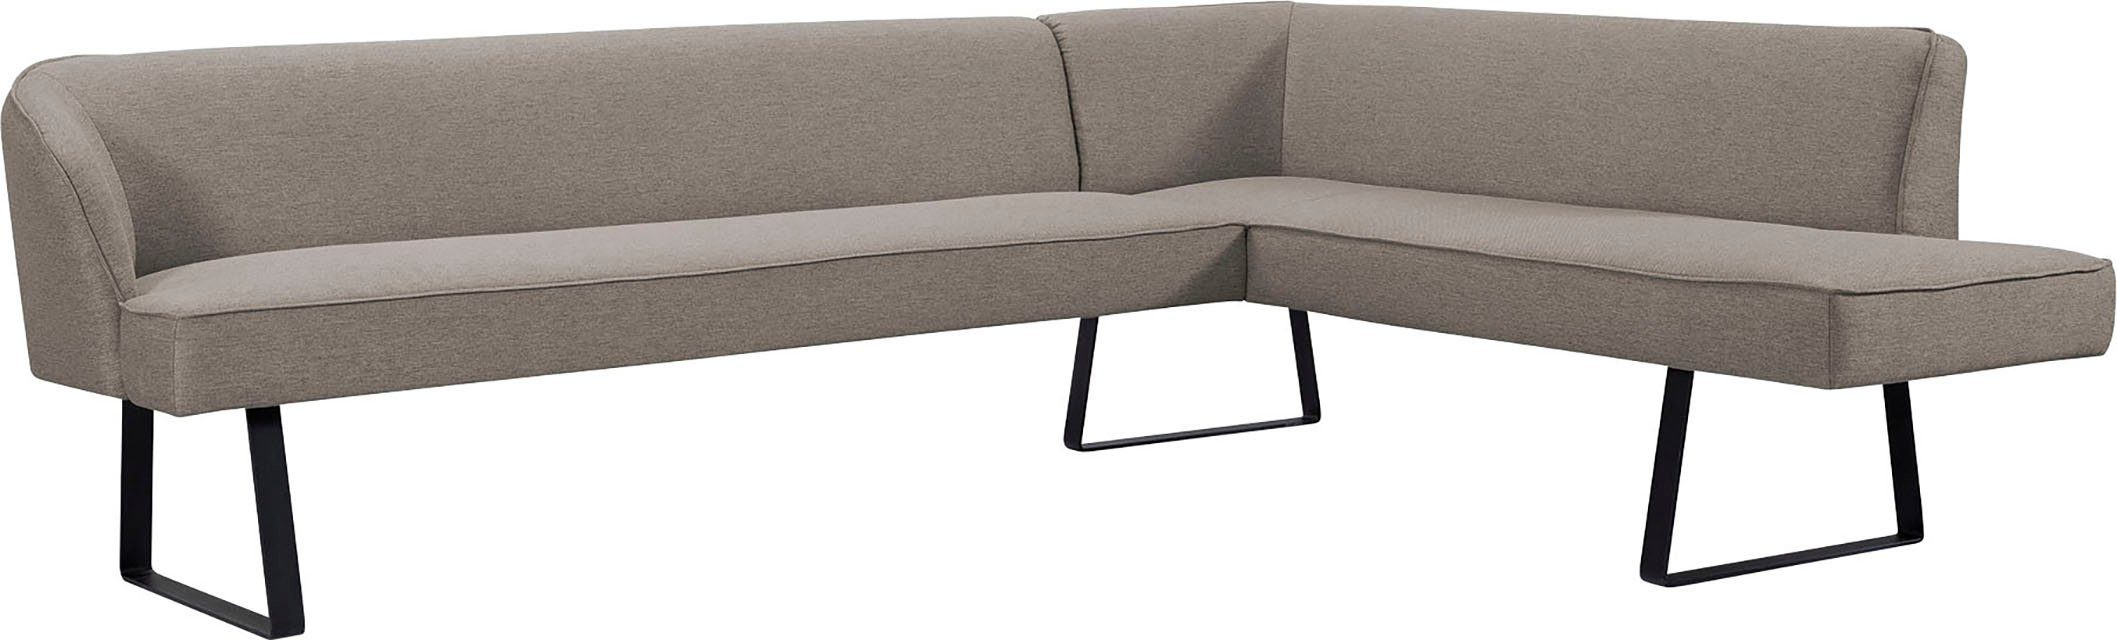 exxpo - sofa fashion Eckbank Americano, mit Keder und Metallfüßen, Bezug in verschiedenen  Qualitäten | Eckbänke